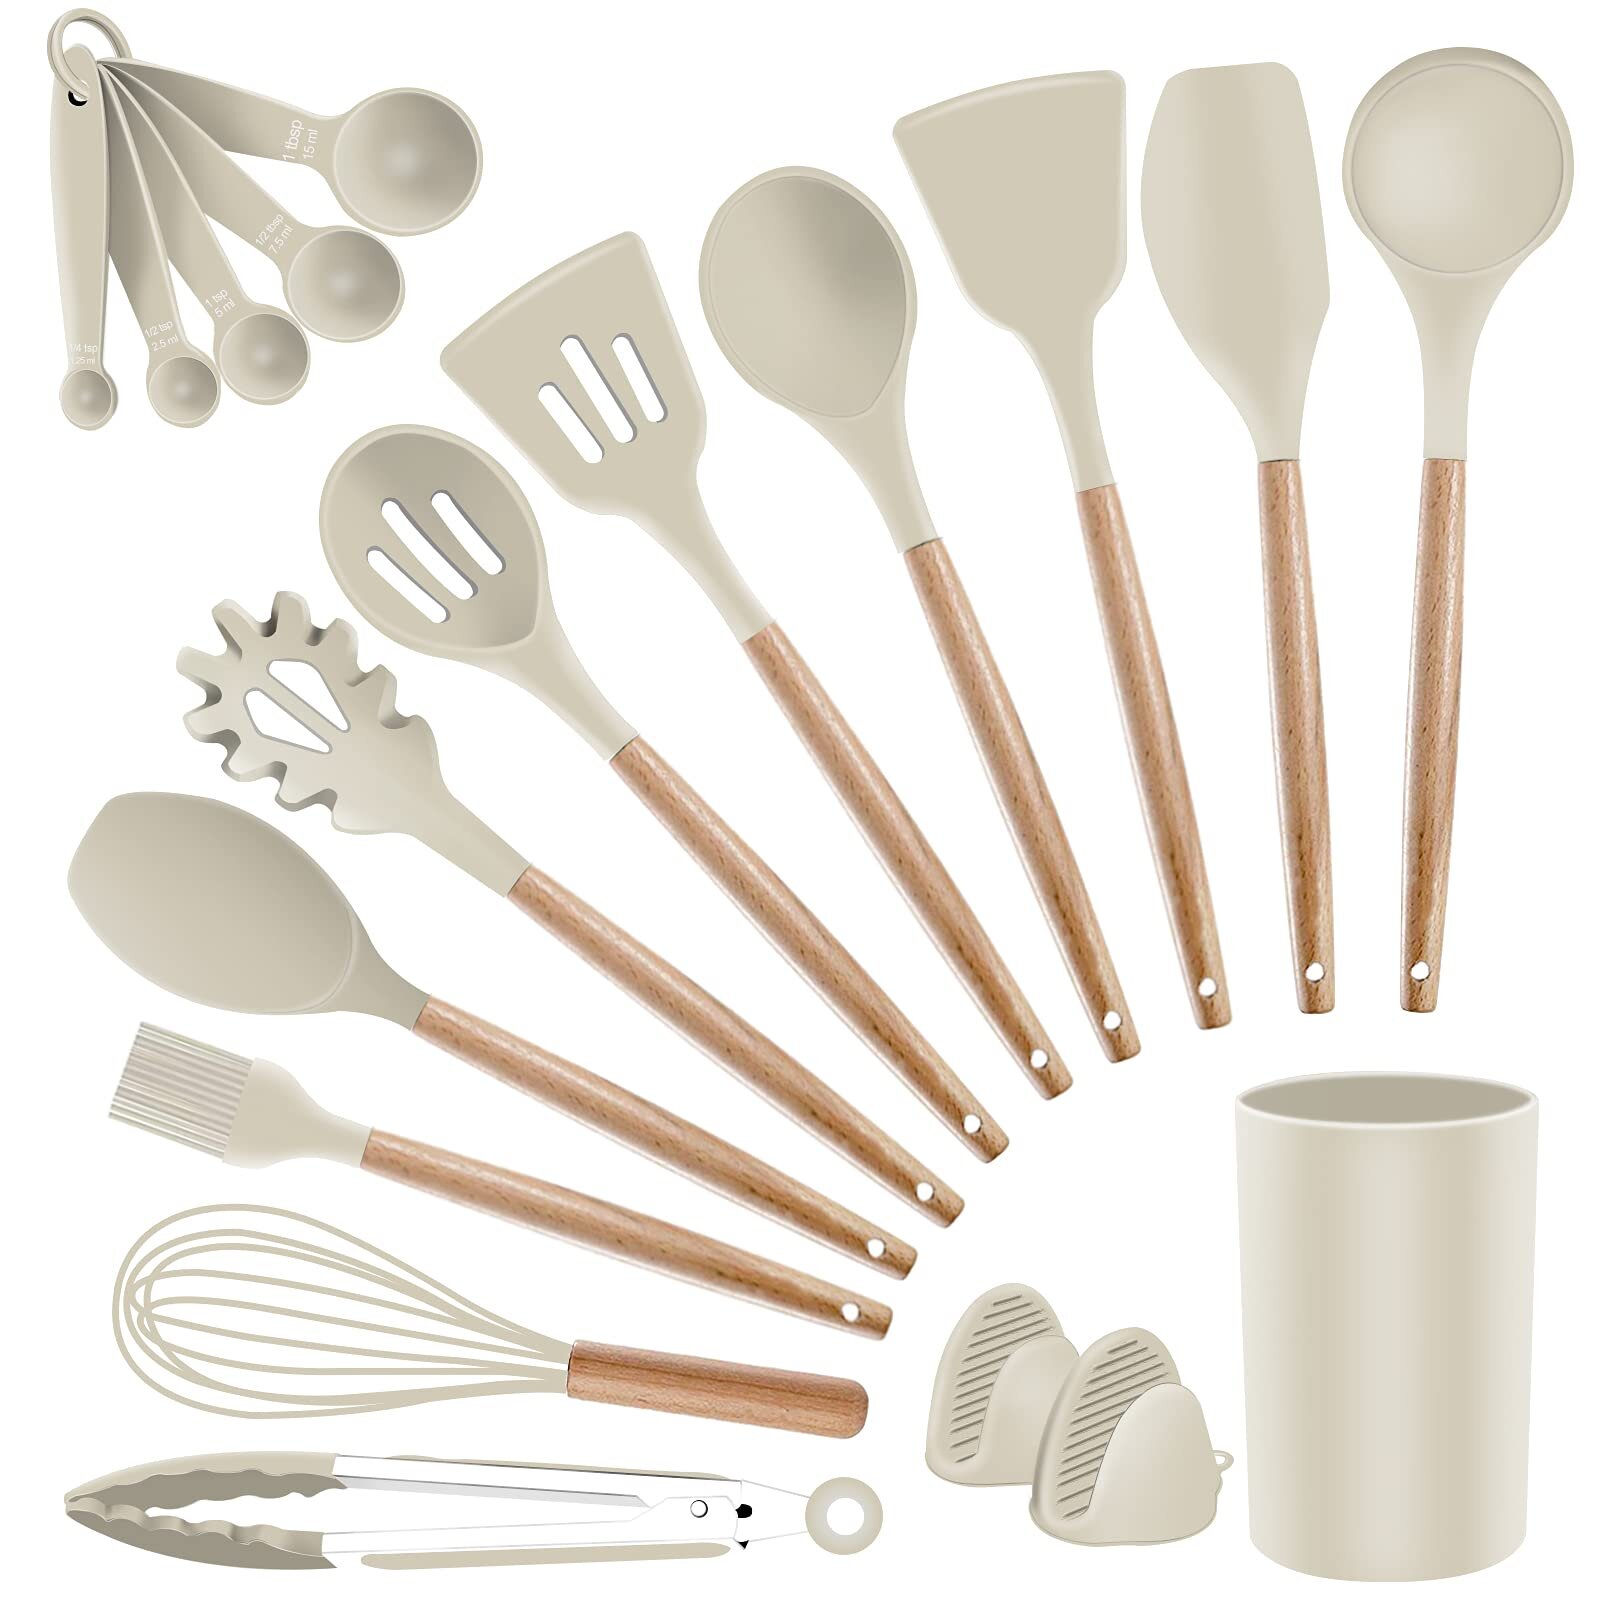 https://assets.wfcdn.com/im/13019505/compr-r85/1631/163156588/19-piece-silicone-assorted-kitchen-utensil-set.jpg